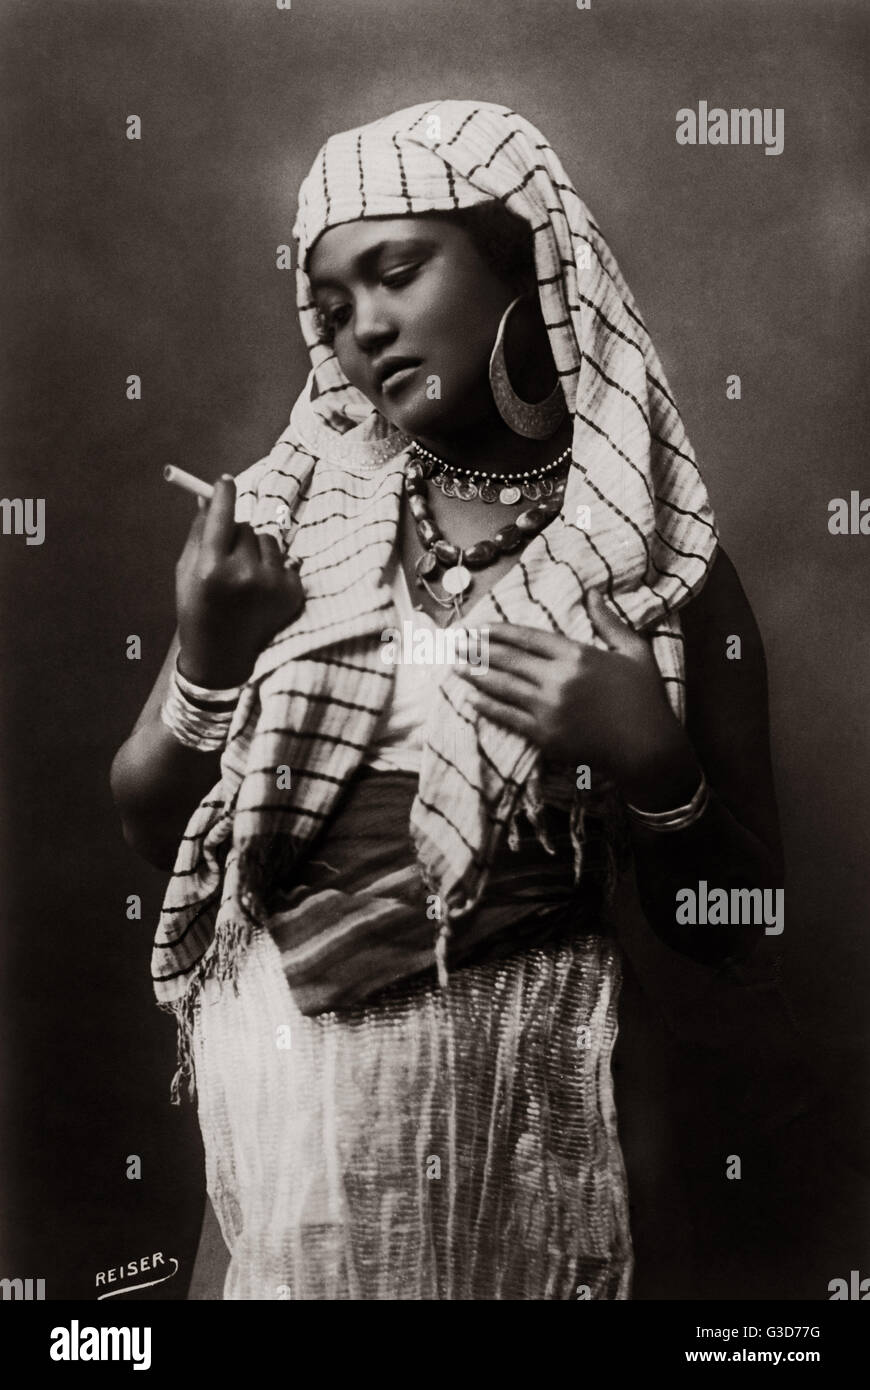 Ragazza egiziana con sigaretta, Egitto, circa 1910 Foto Stock